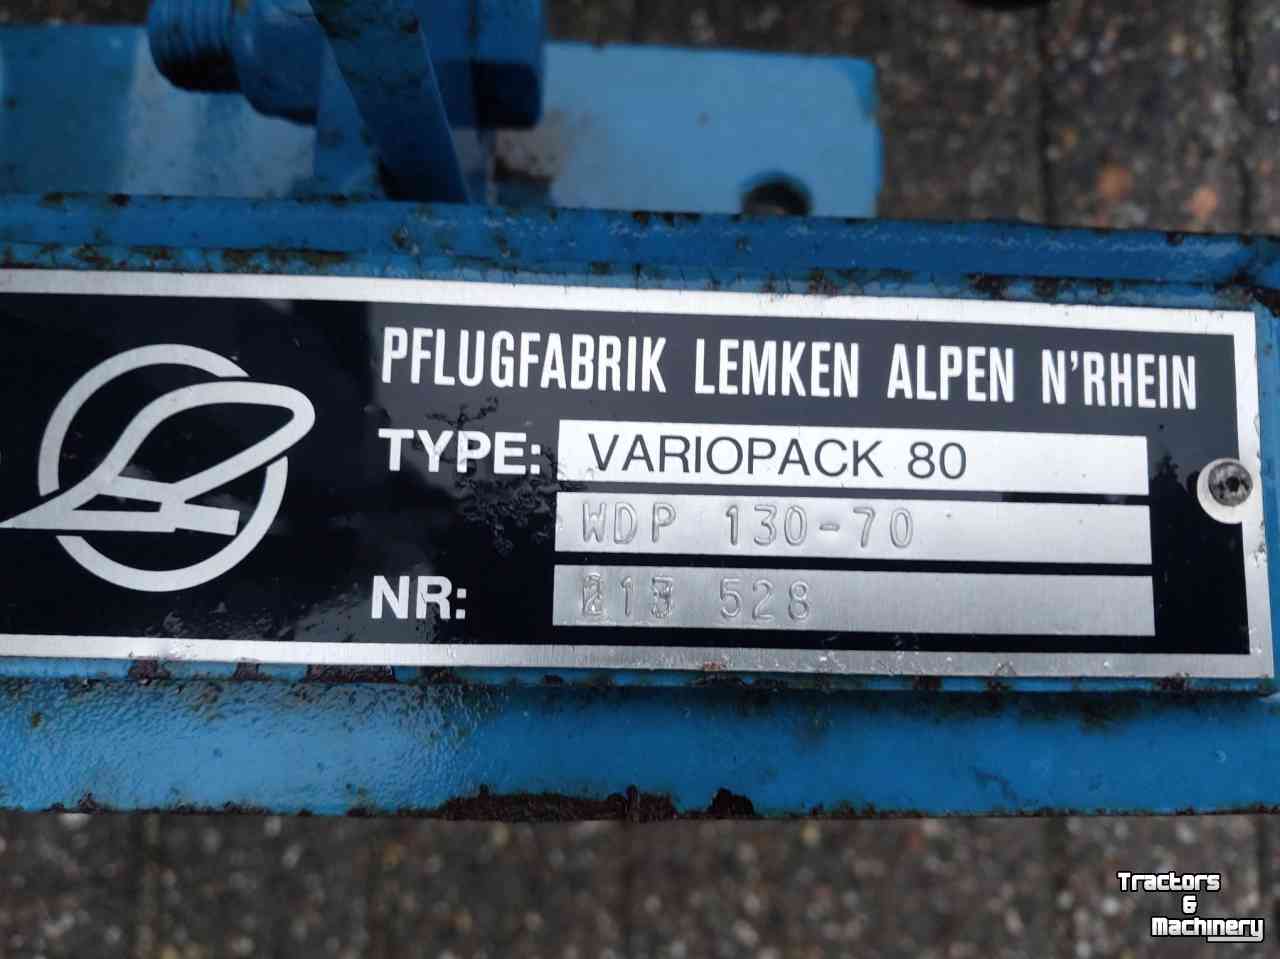 Furrow presses Lemken Variopack 80 met 45 graden  ringen